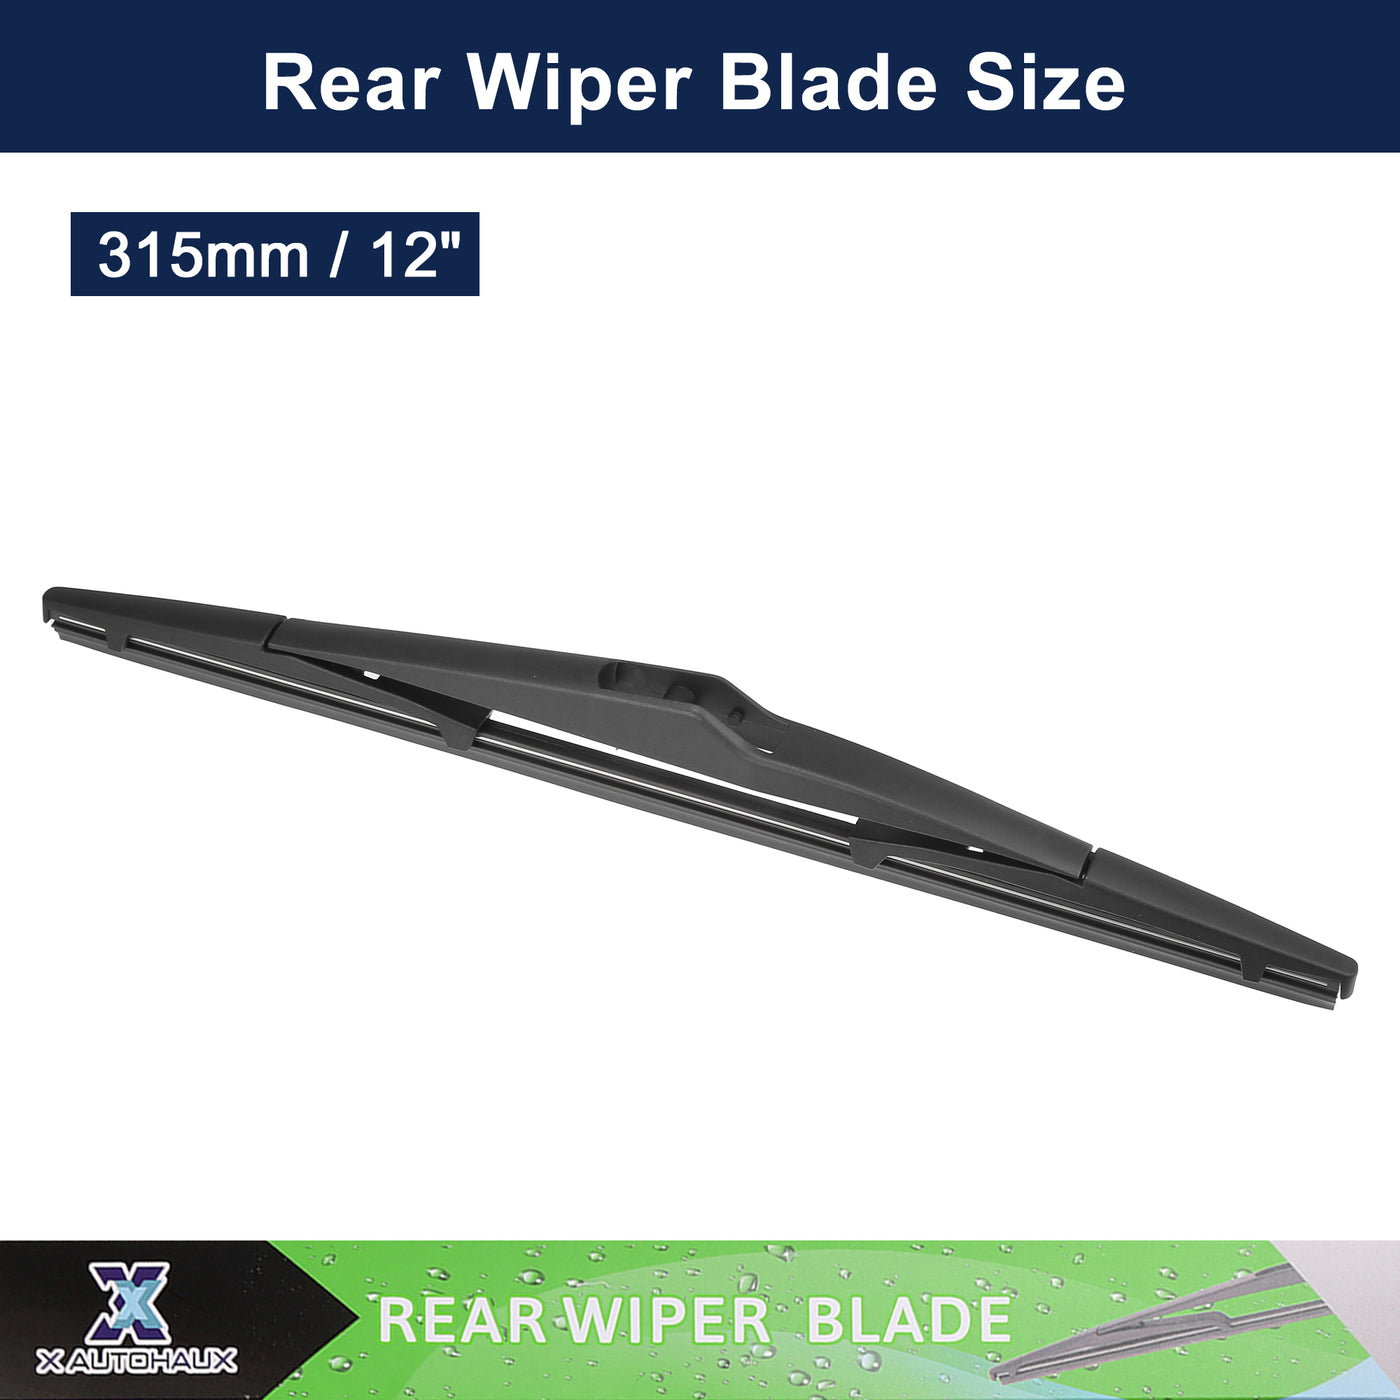 X AUTOHAUX 2pcs Rear Windshield Wiper Blade Replacement for Kia Sportage 2010-2016 for Hyundai Tucson 2010-2015 for Hyundai Elantra Touring 2007-2010